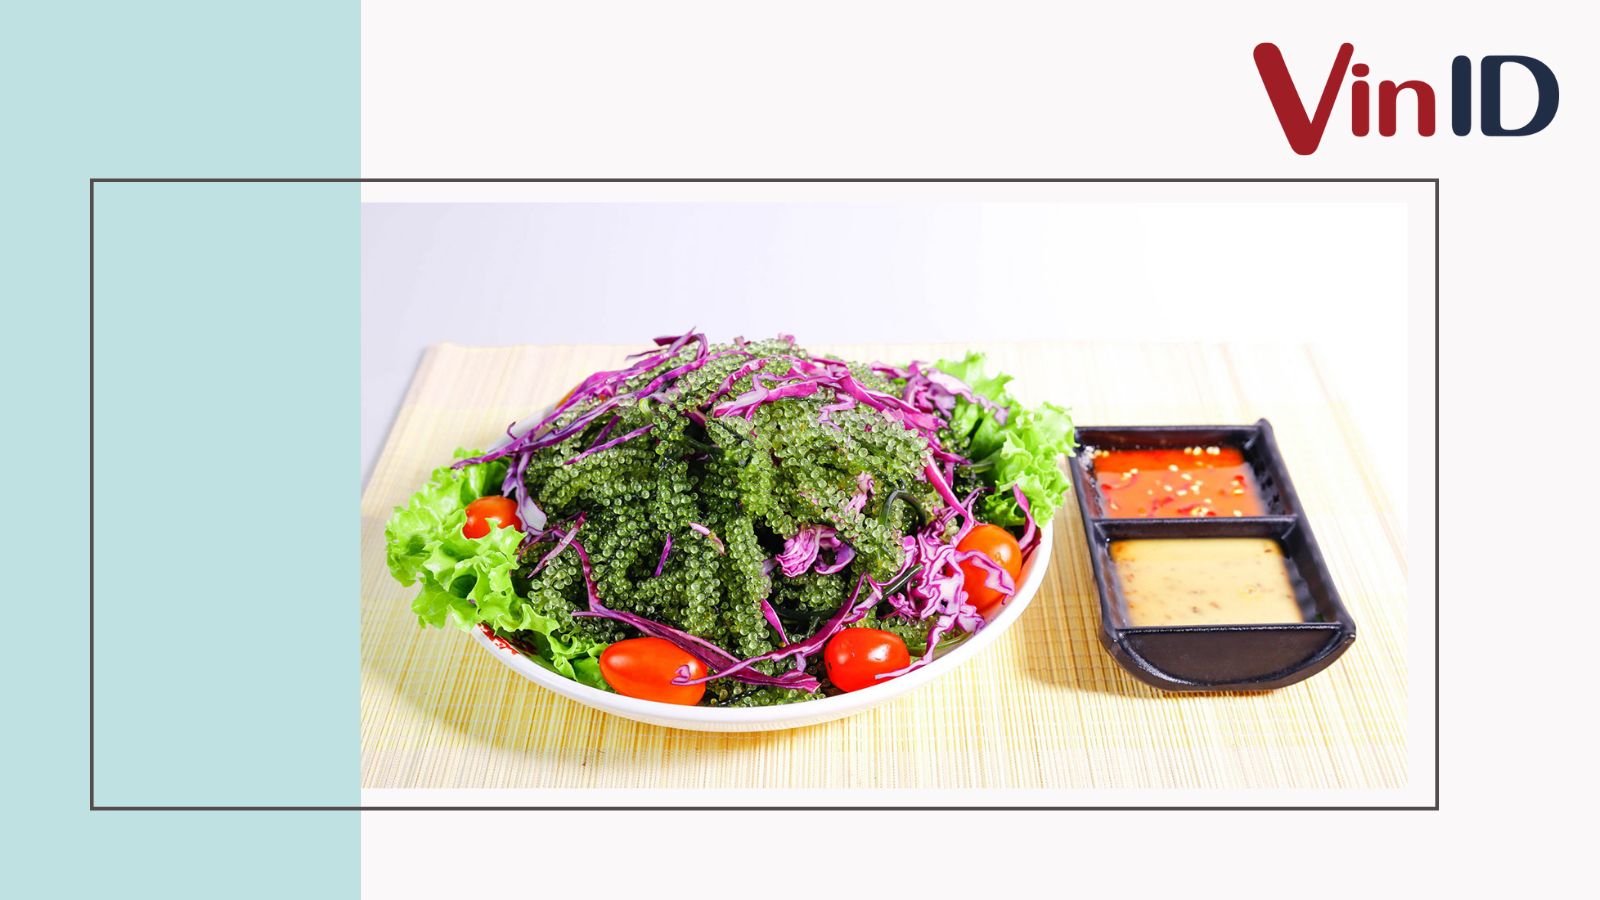 Có thể thay thế rong nho bằng loại rau nào khác để làm salad không?
